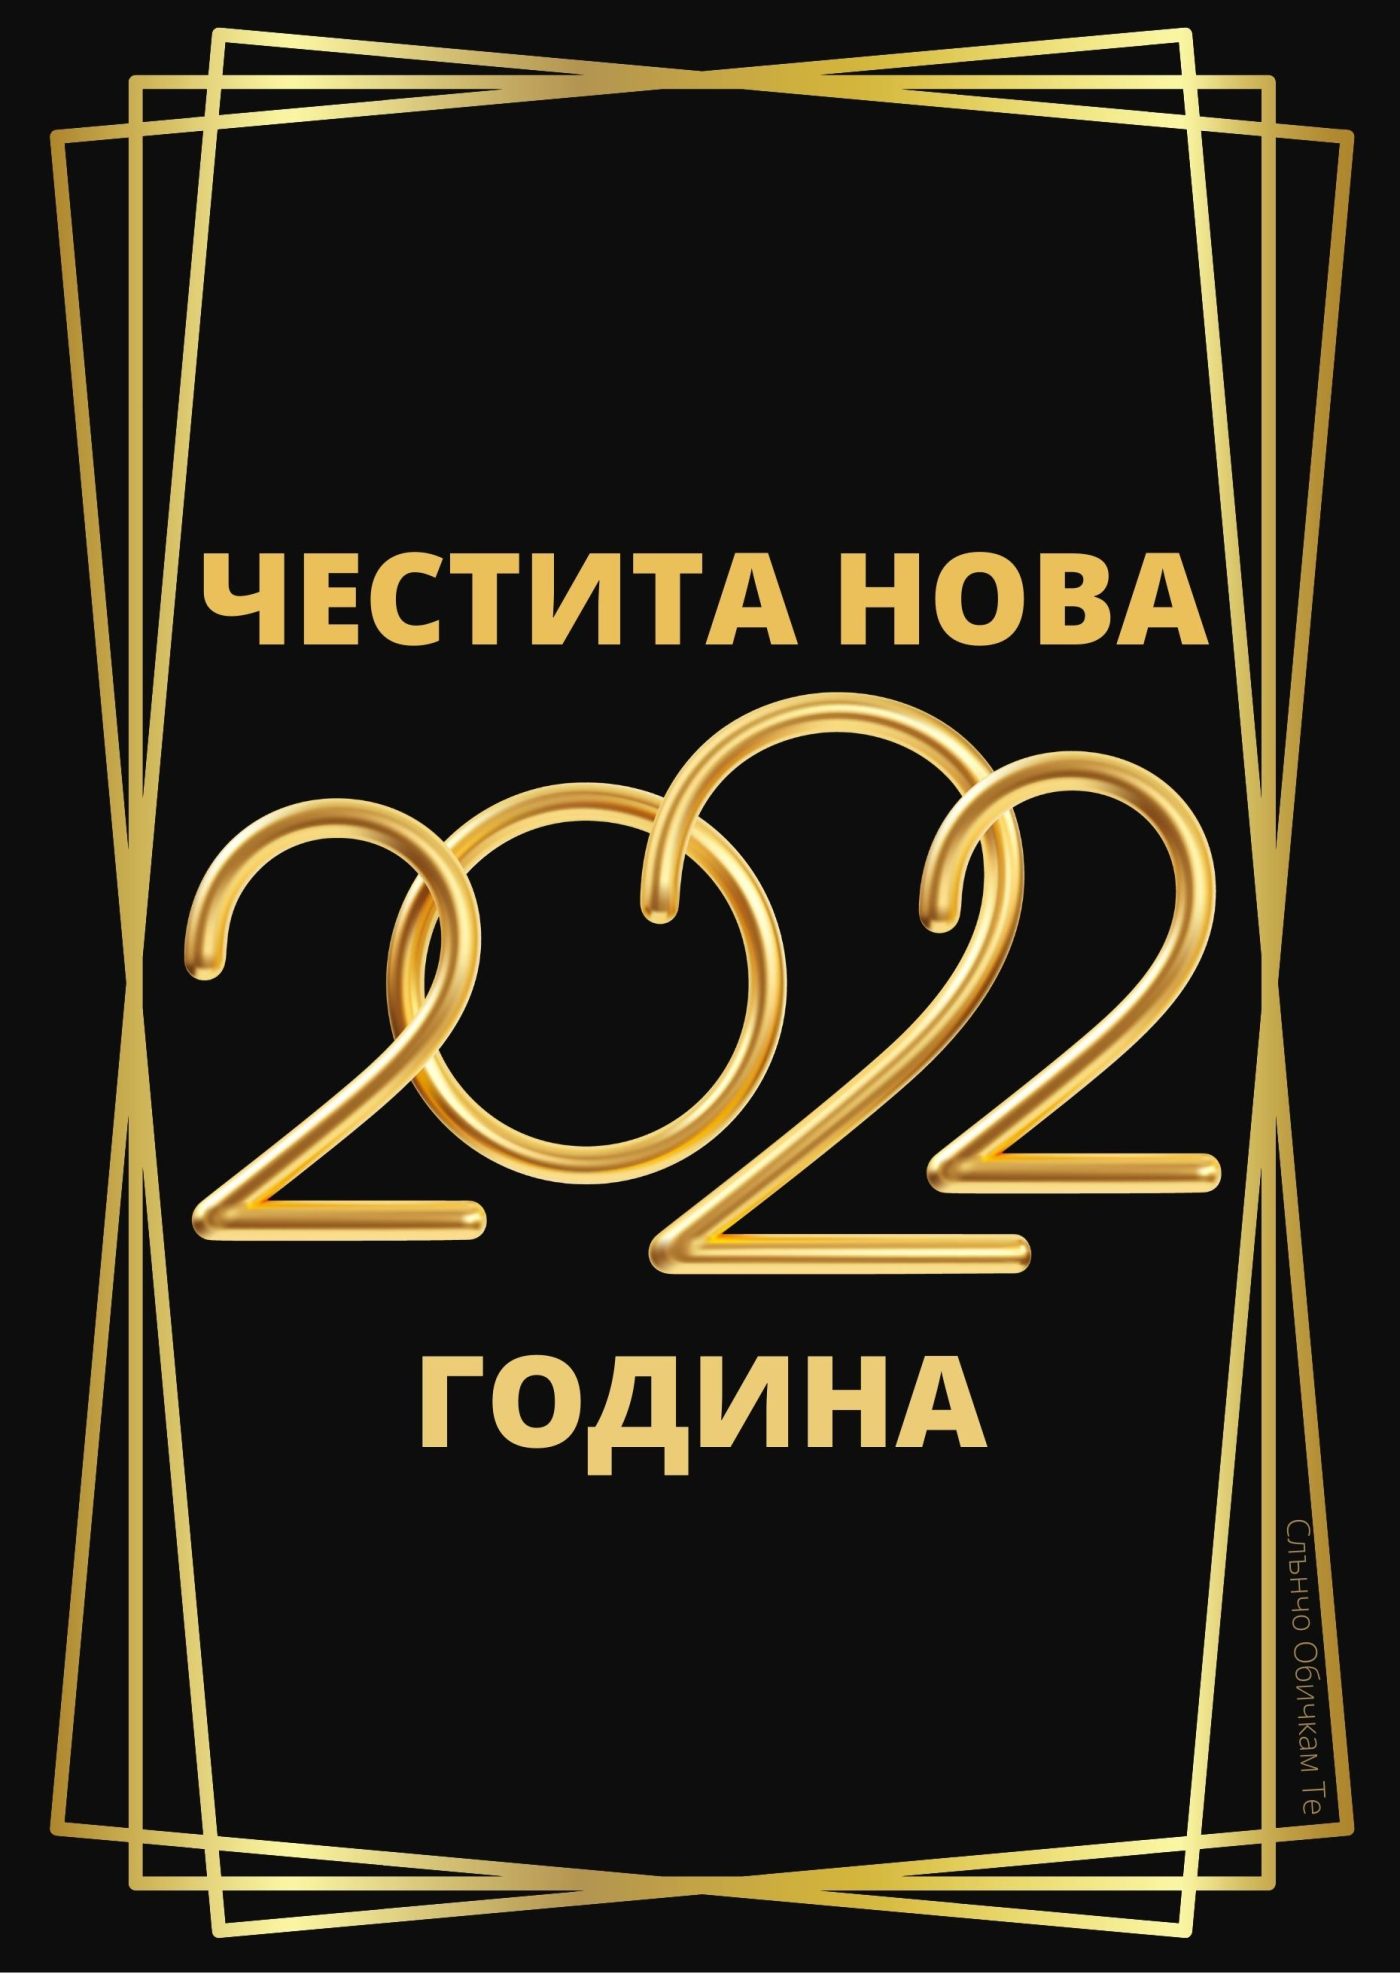 Честита нова година 2022, новогодишни картички, пожелания за нова година, 2022, картички за нова година, чнг, слънчо обичкам те